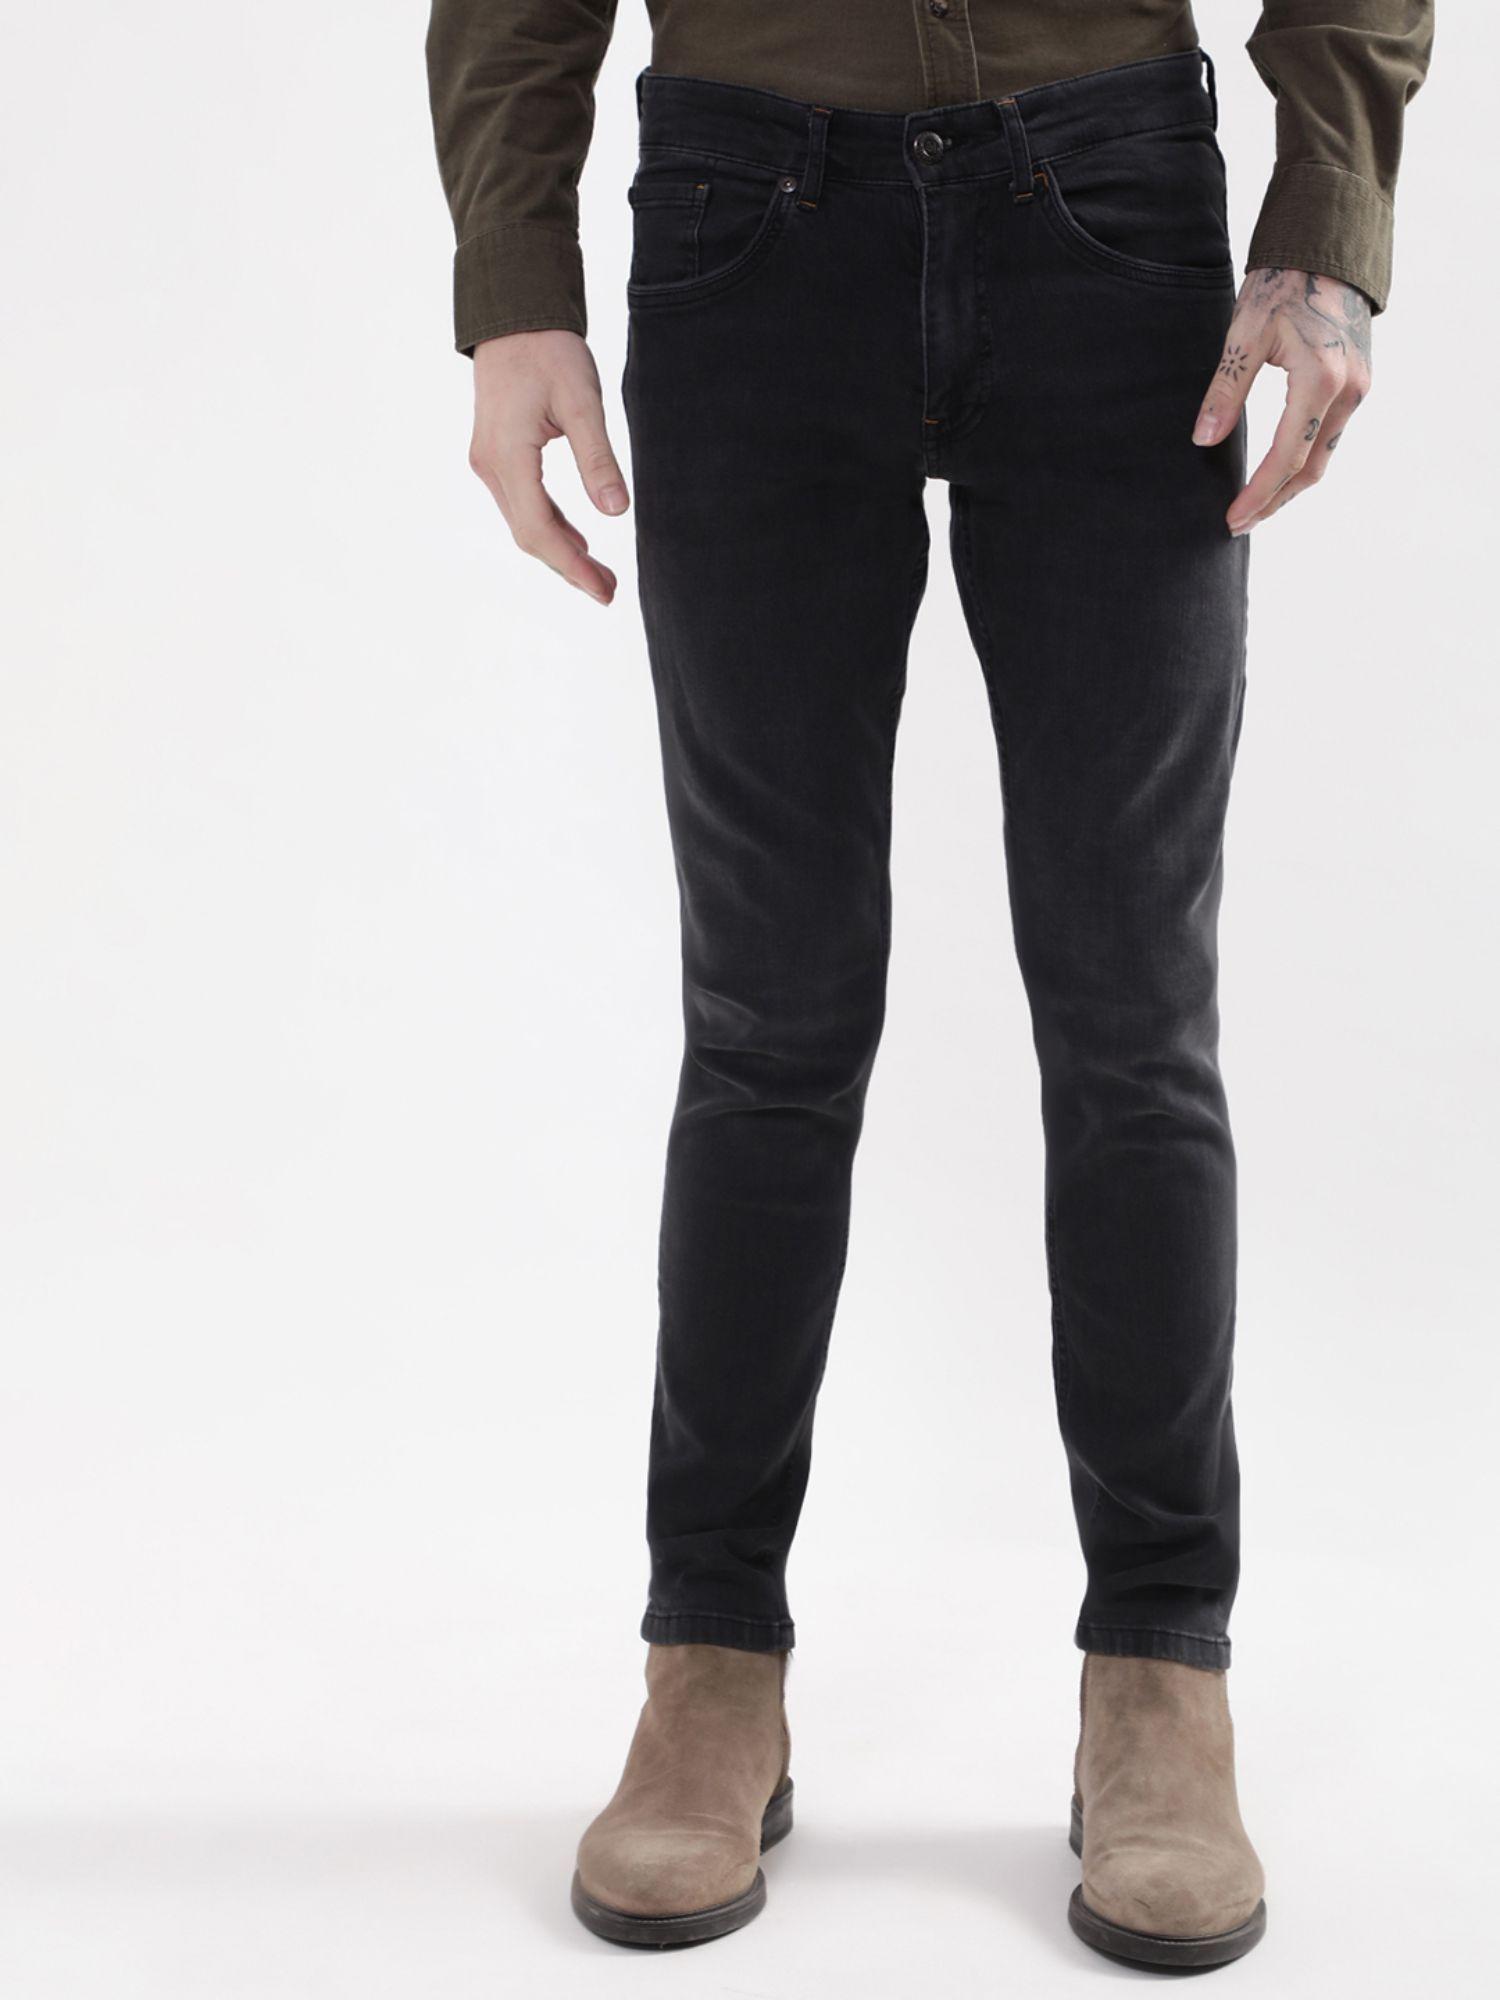 mens black solid jeans